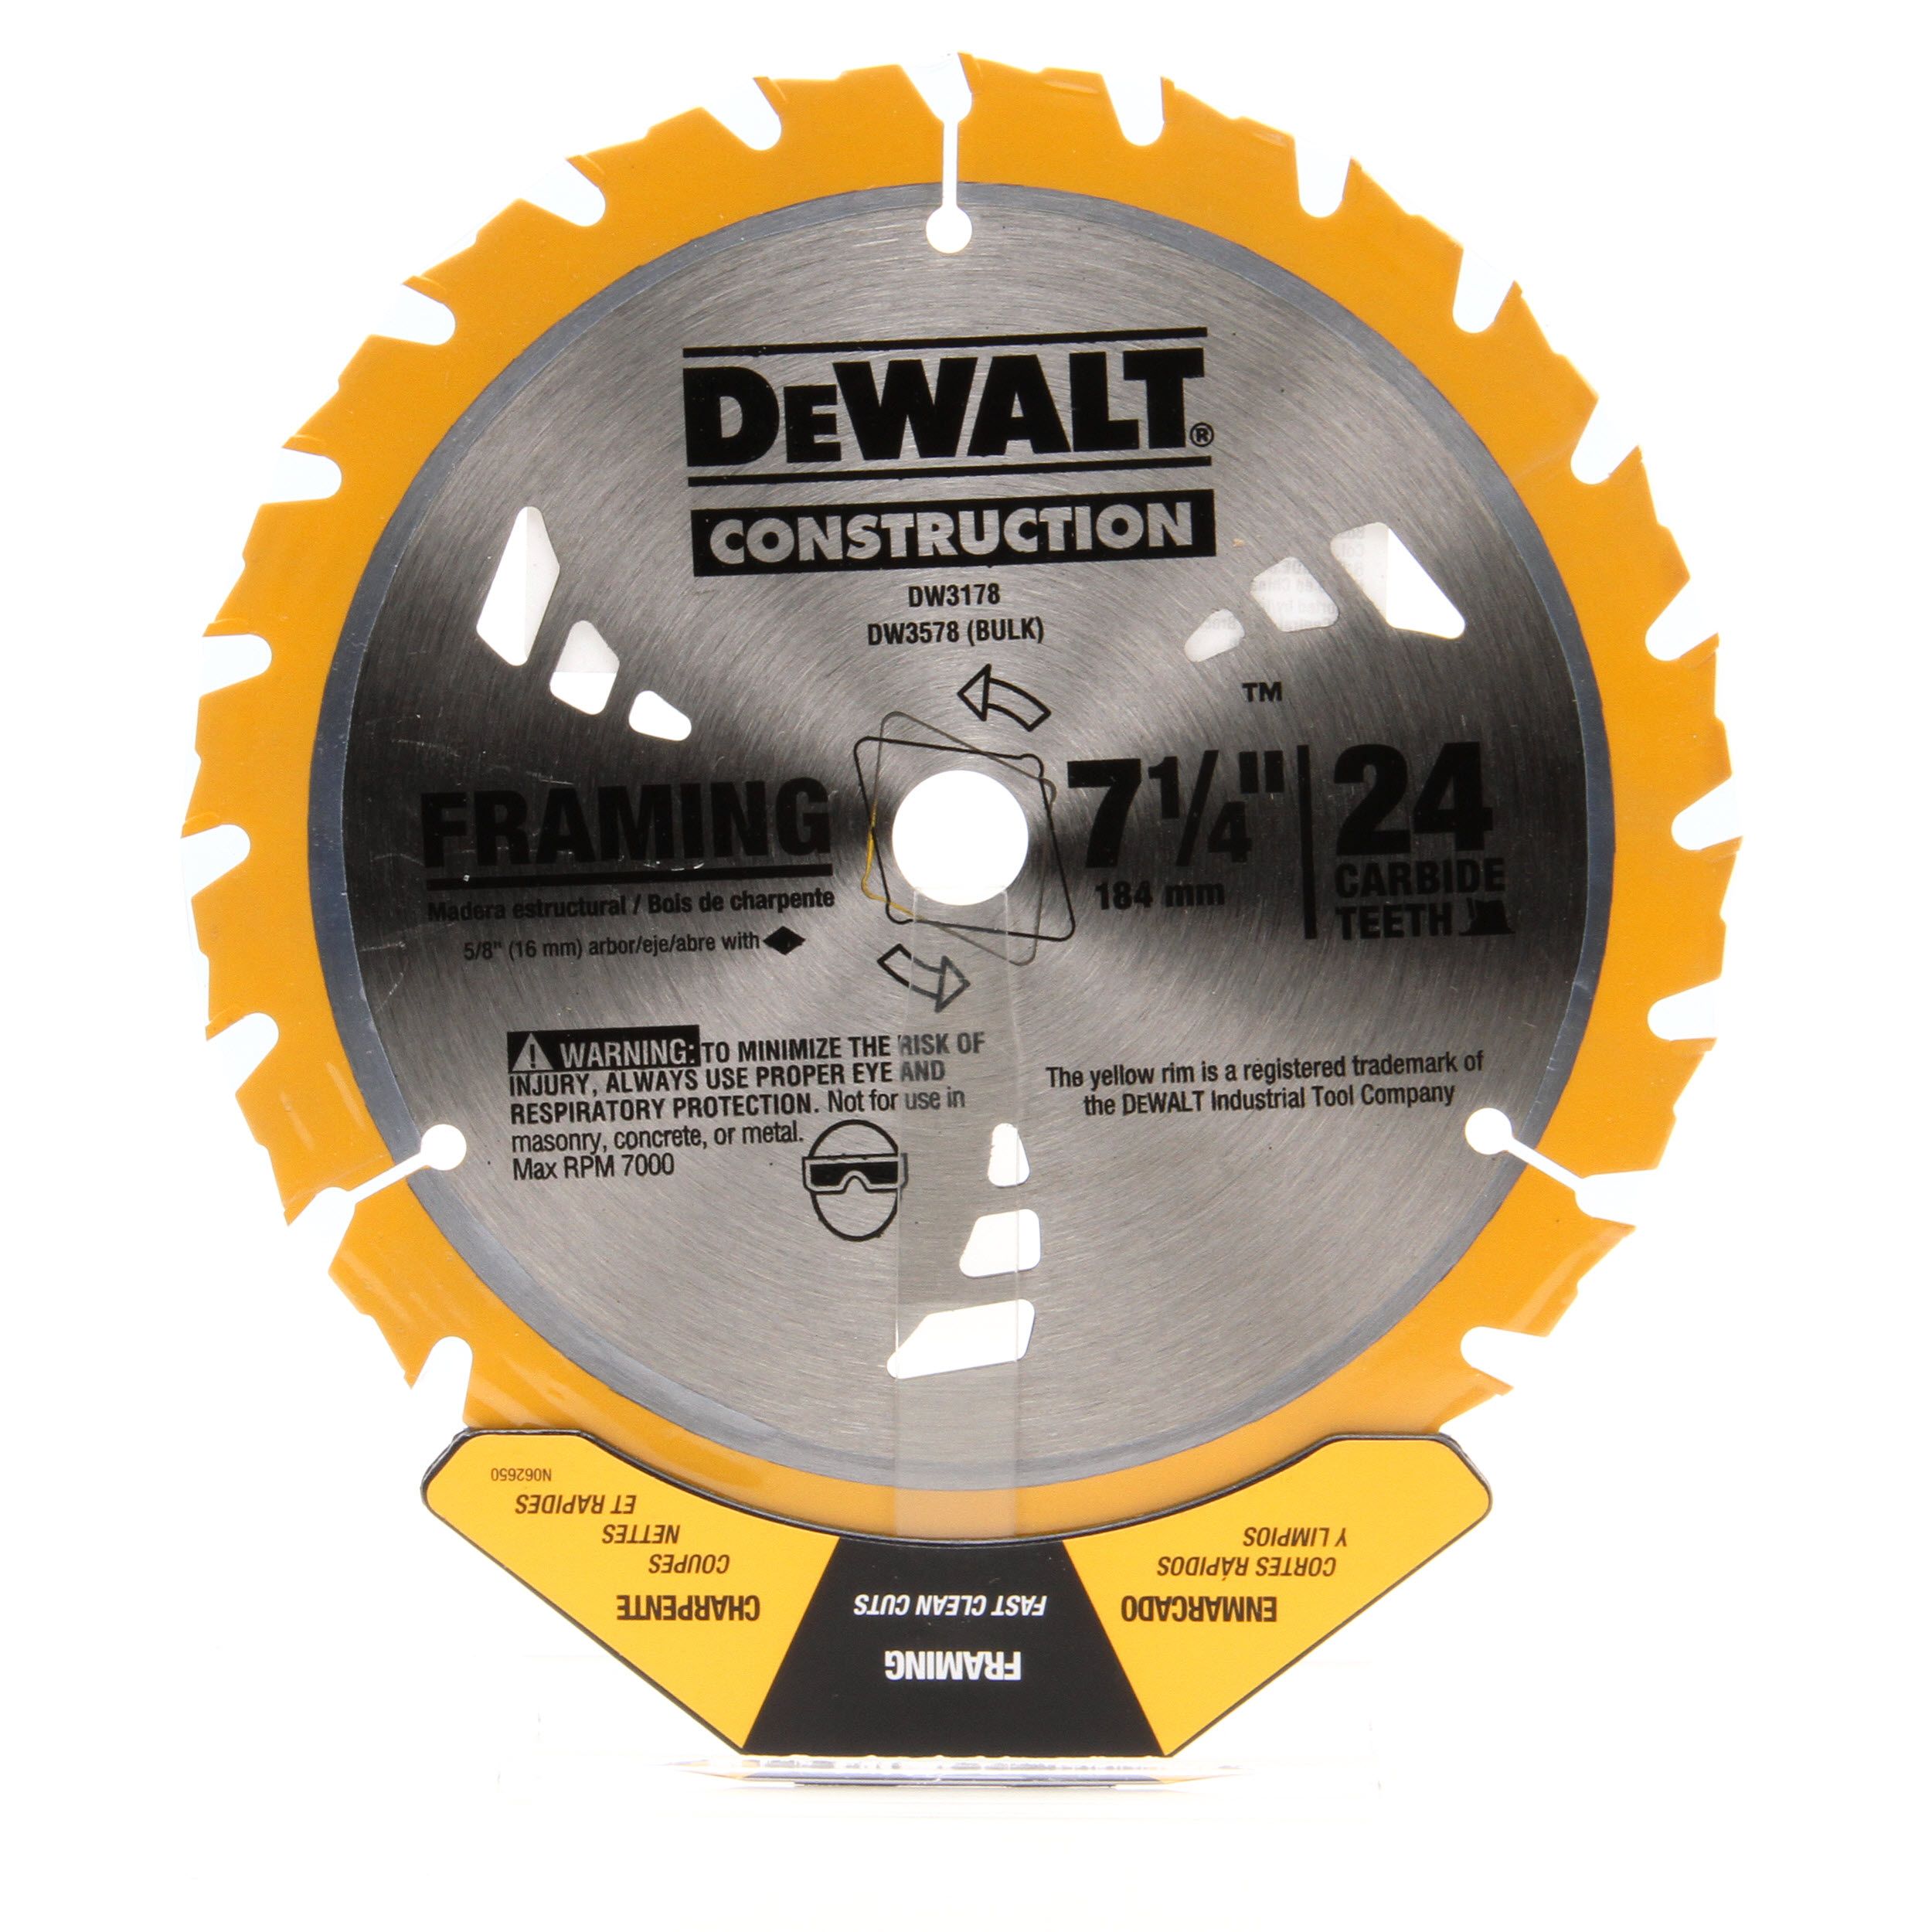 Dewalt "Construction"  7-1/4" x 24 Th Carbide Saw Blade Framing Skill Saw DW3178 